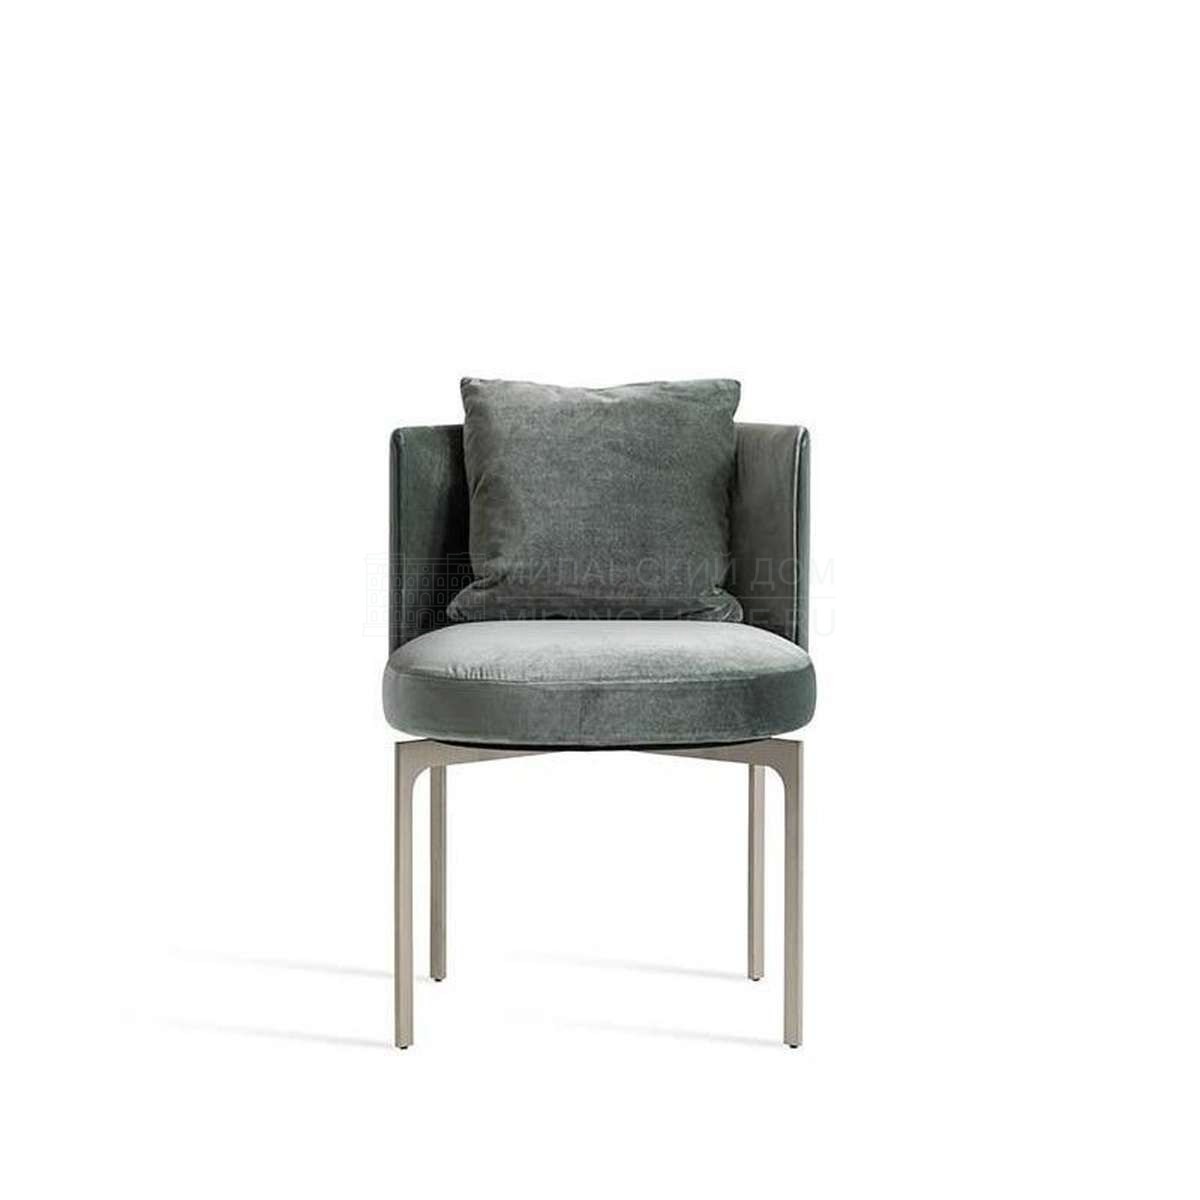 Стул Somma chair  из Италии фабрики FENDI Casa